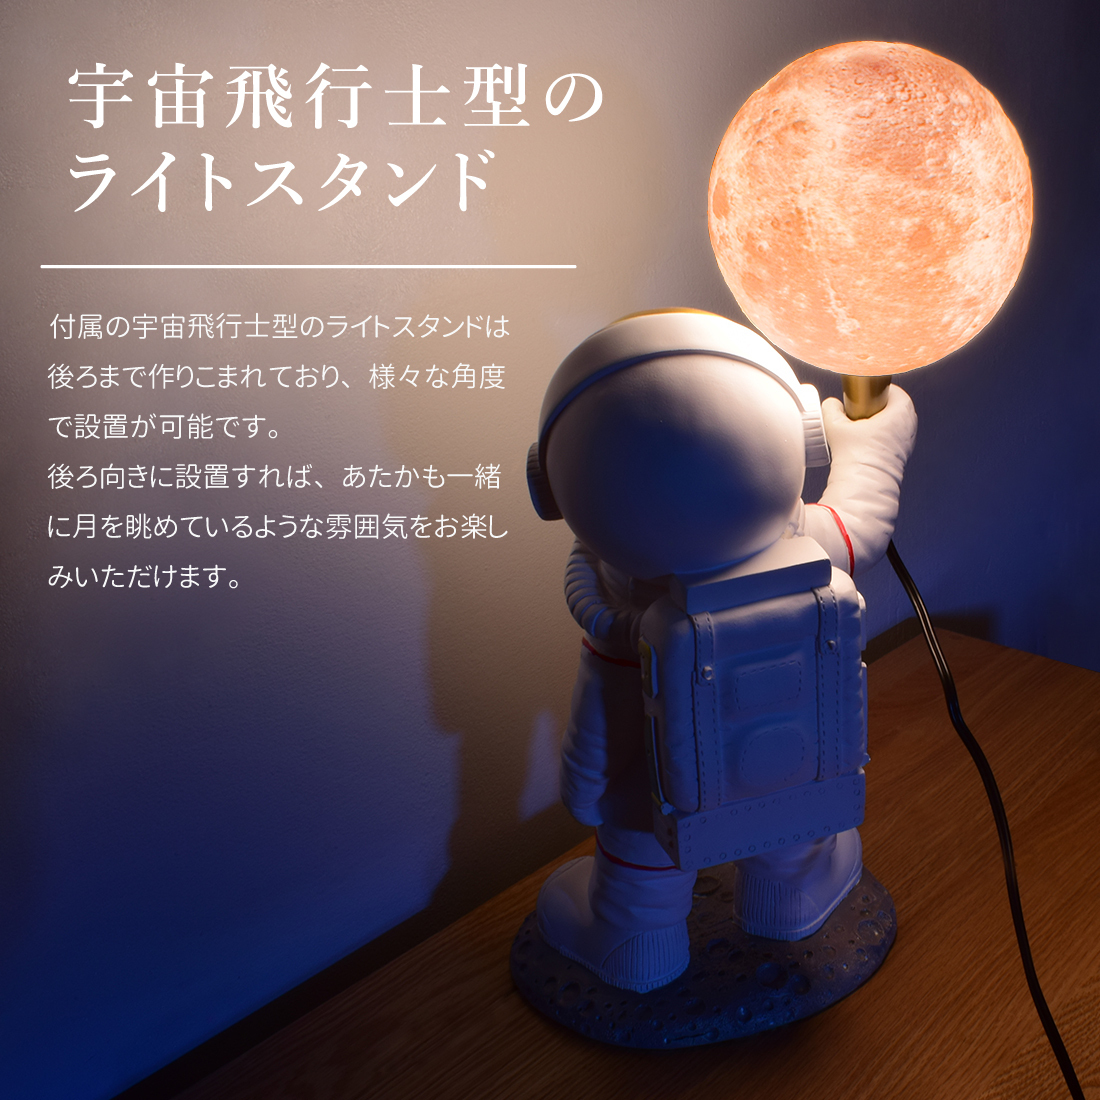  космонавт свет месяц свет LED непрямое освещение стол лампа настольный светильник Inte rear living модный подарок Takumi. . товар 